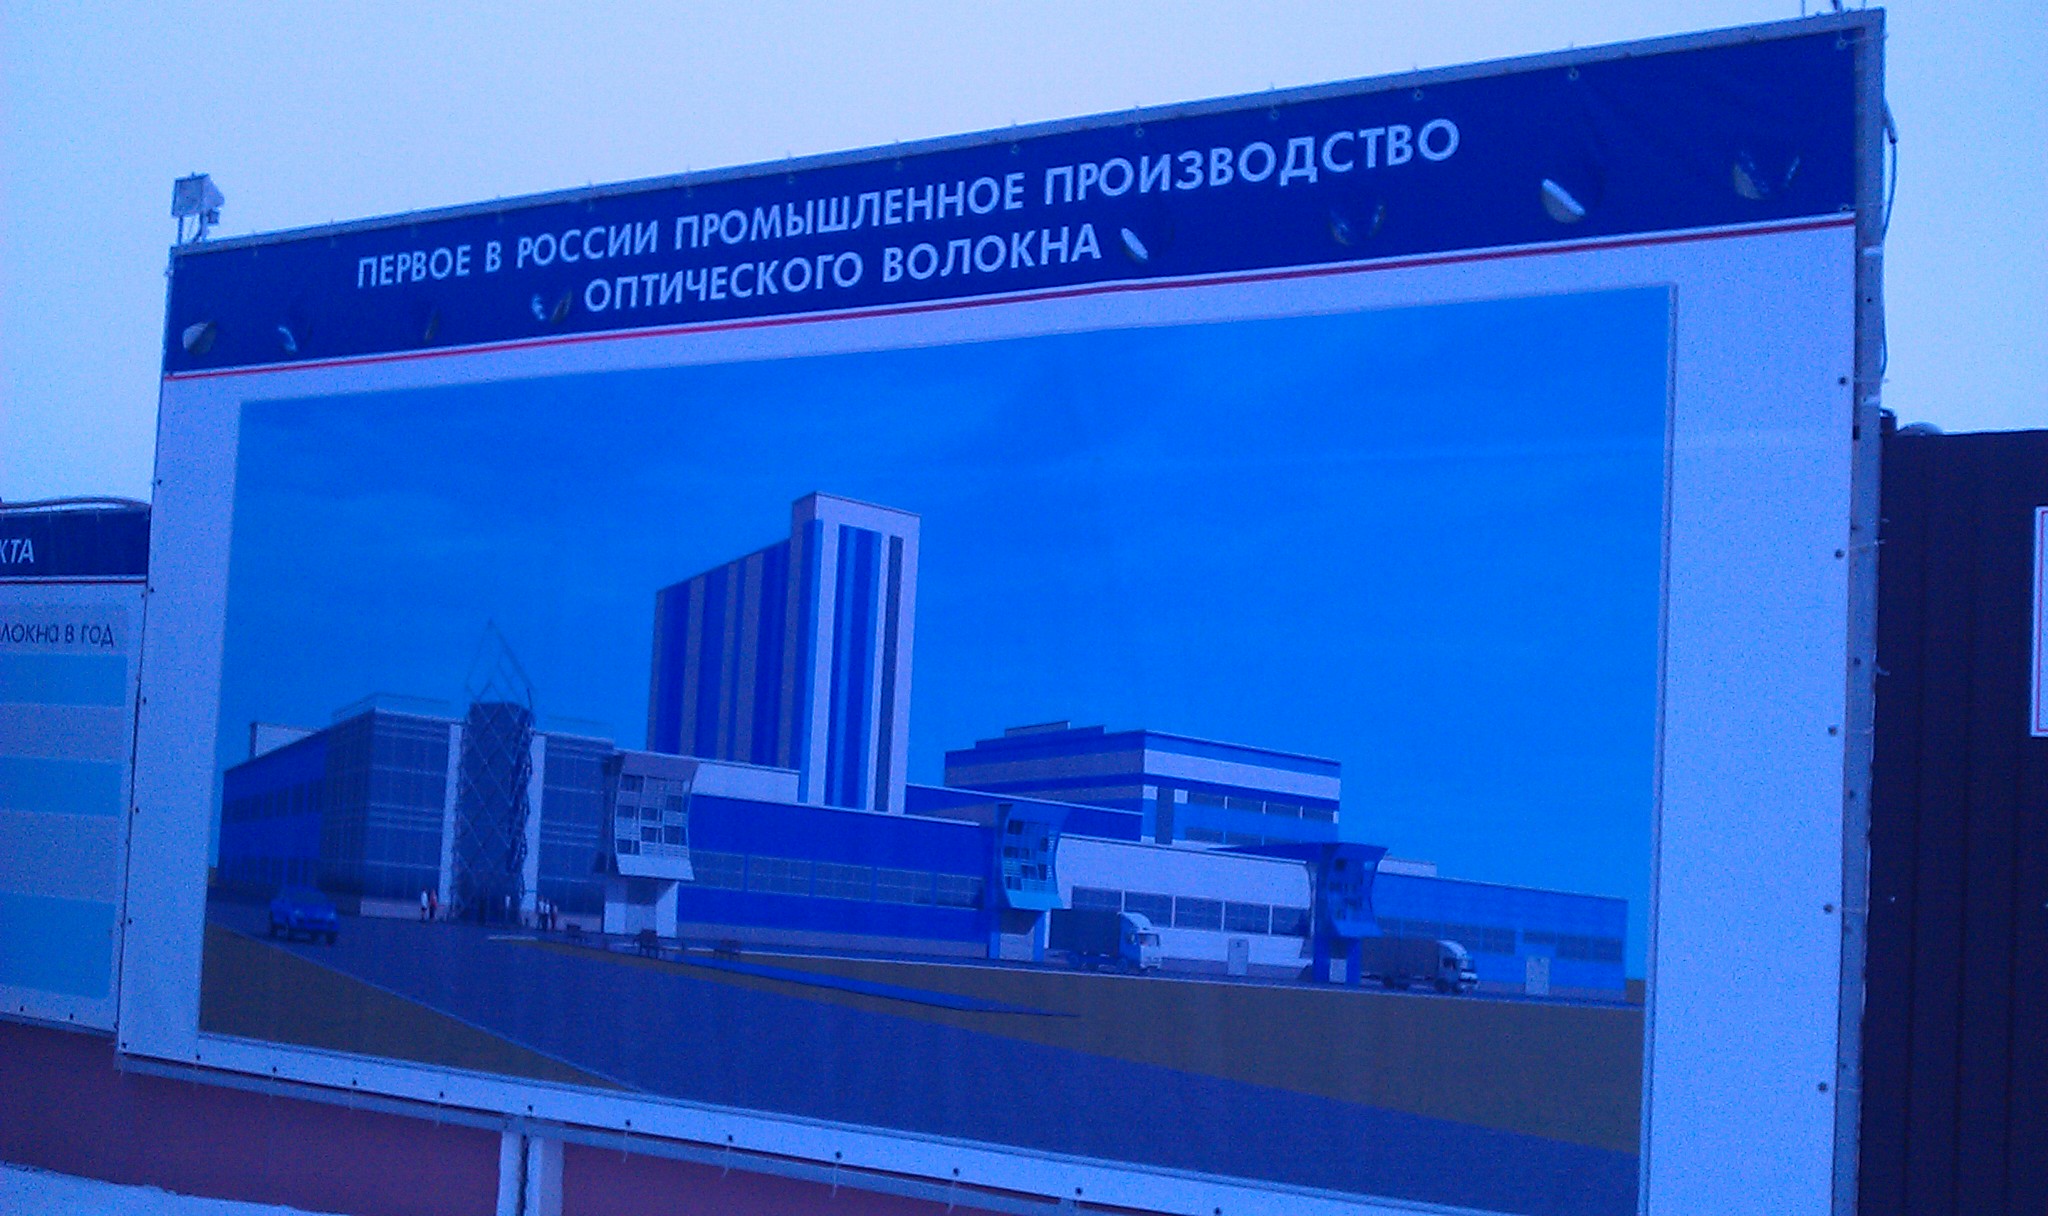 Оптиковолоконный завод , г. Саранск